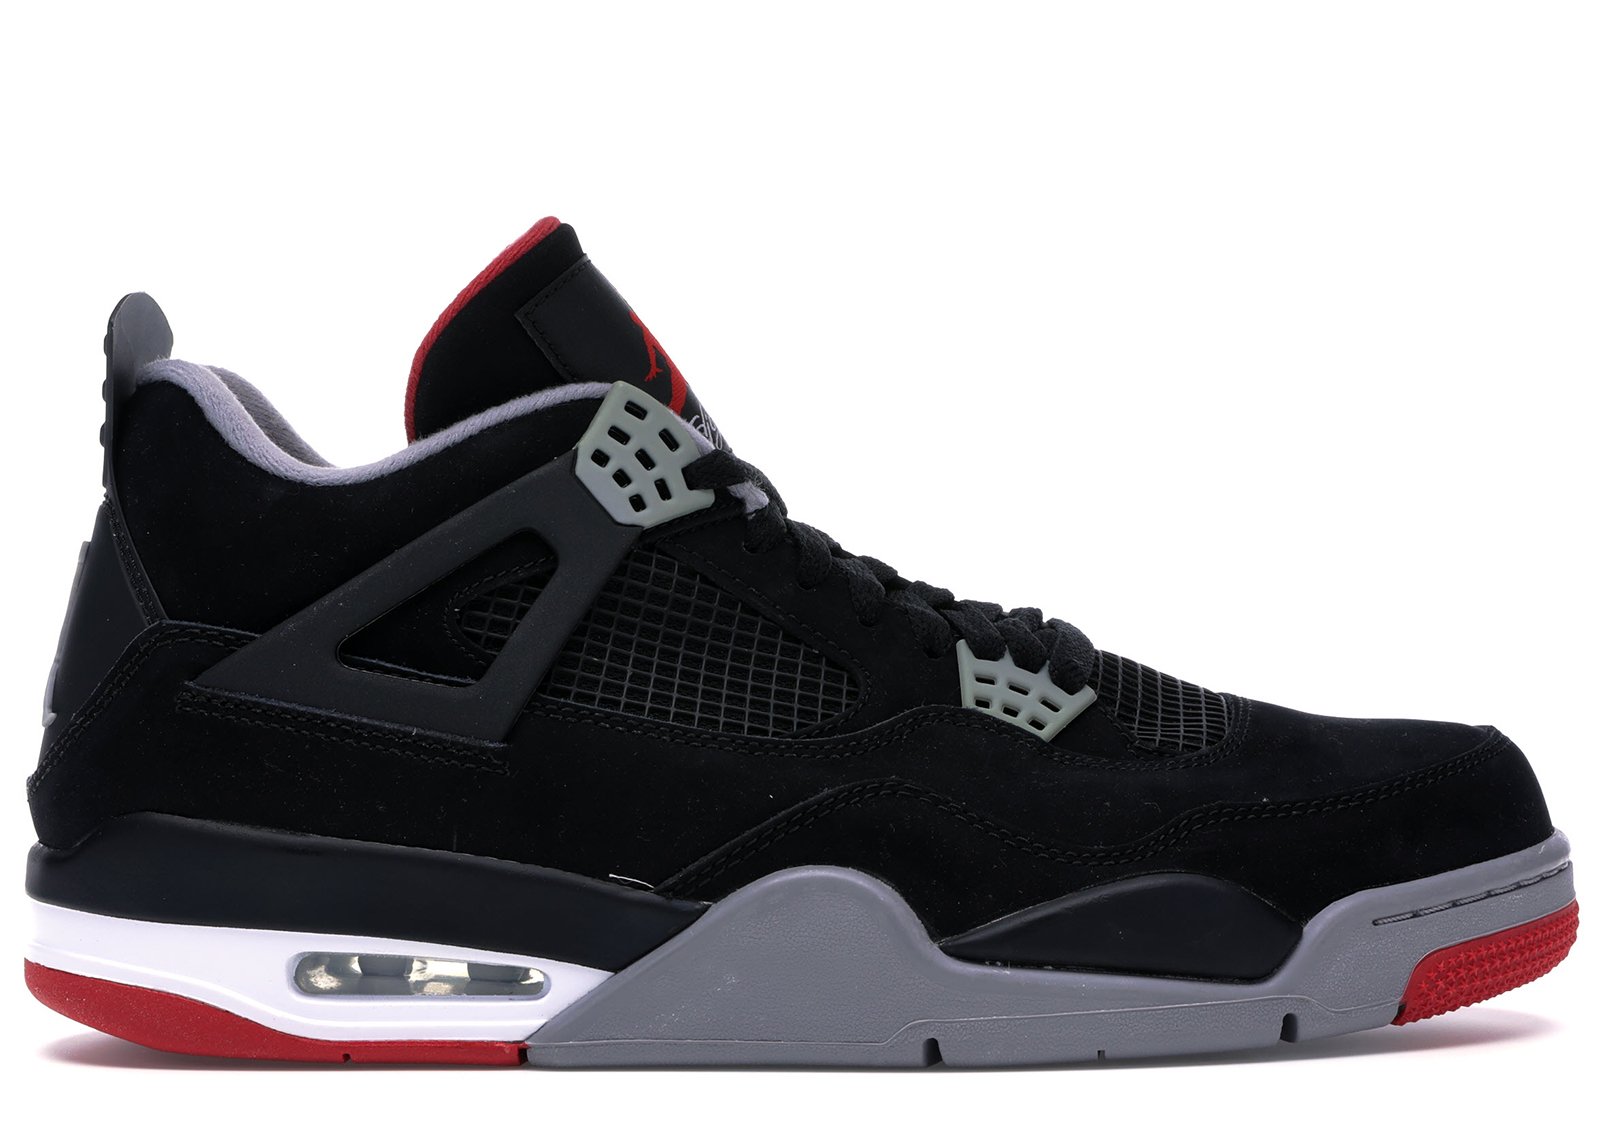 sneakers Jordan 4 Retro Black Cement (2012)